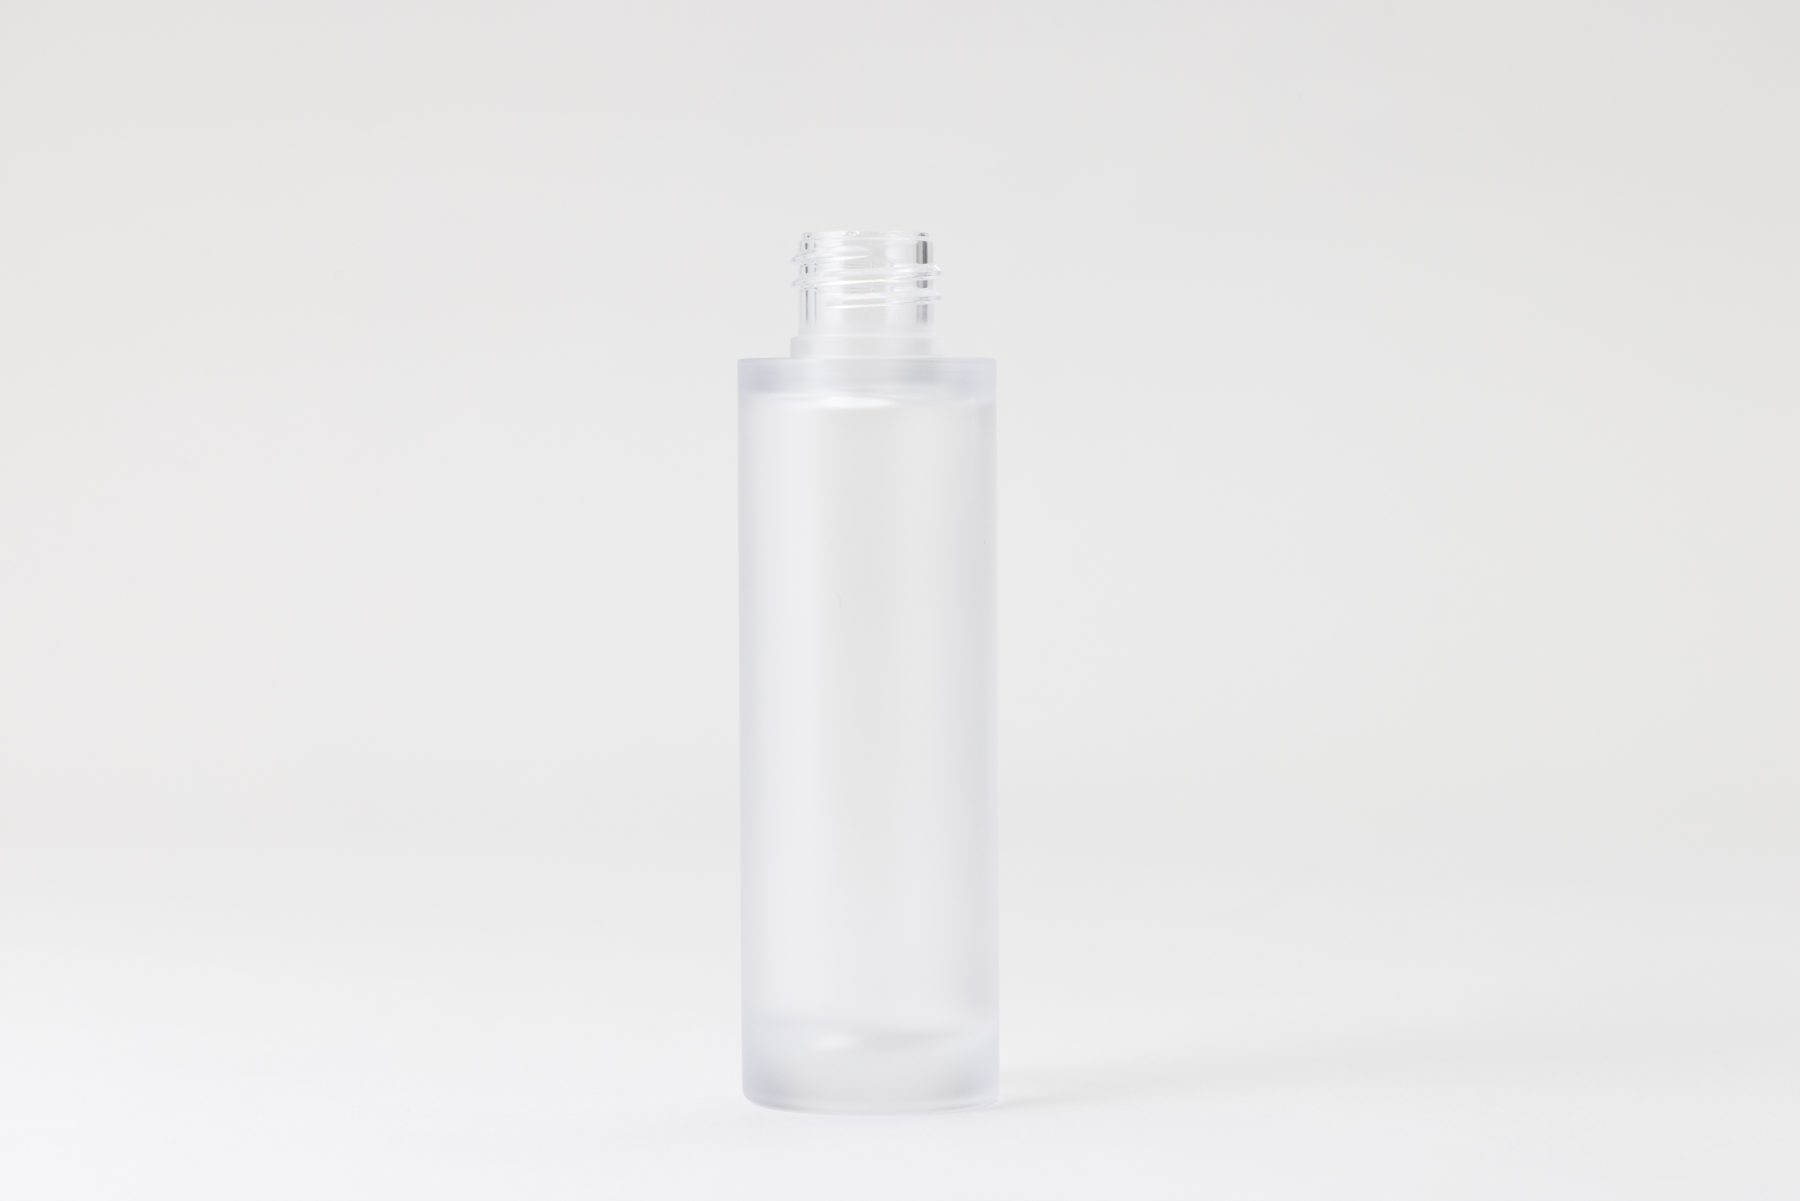 【化粧品容器】小ロット在庫対応の標準マット塗装仕様ボトル SB06-50C マット塗装〈プラスチック〉